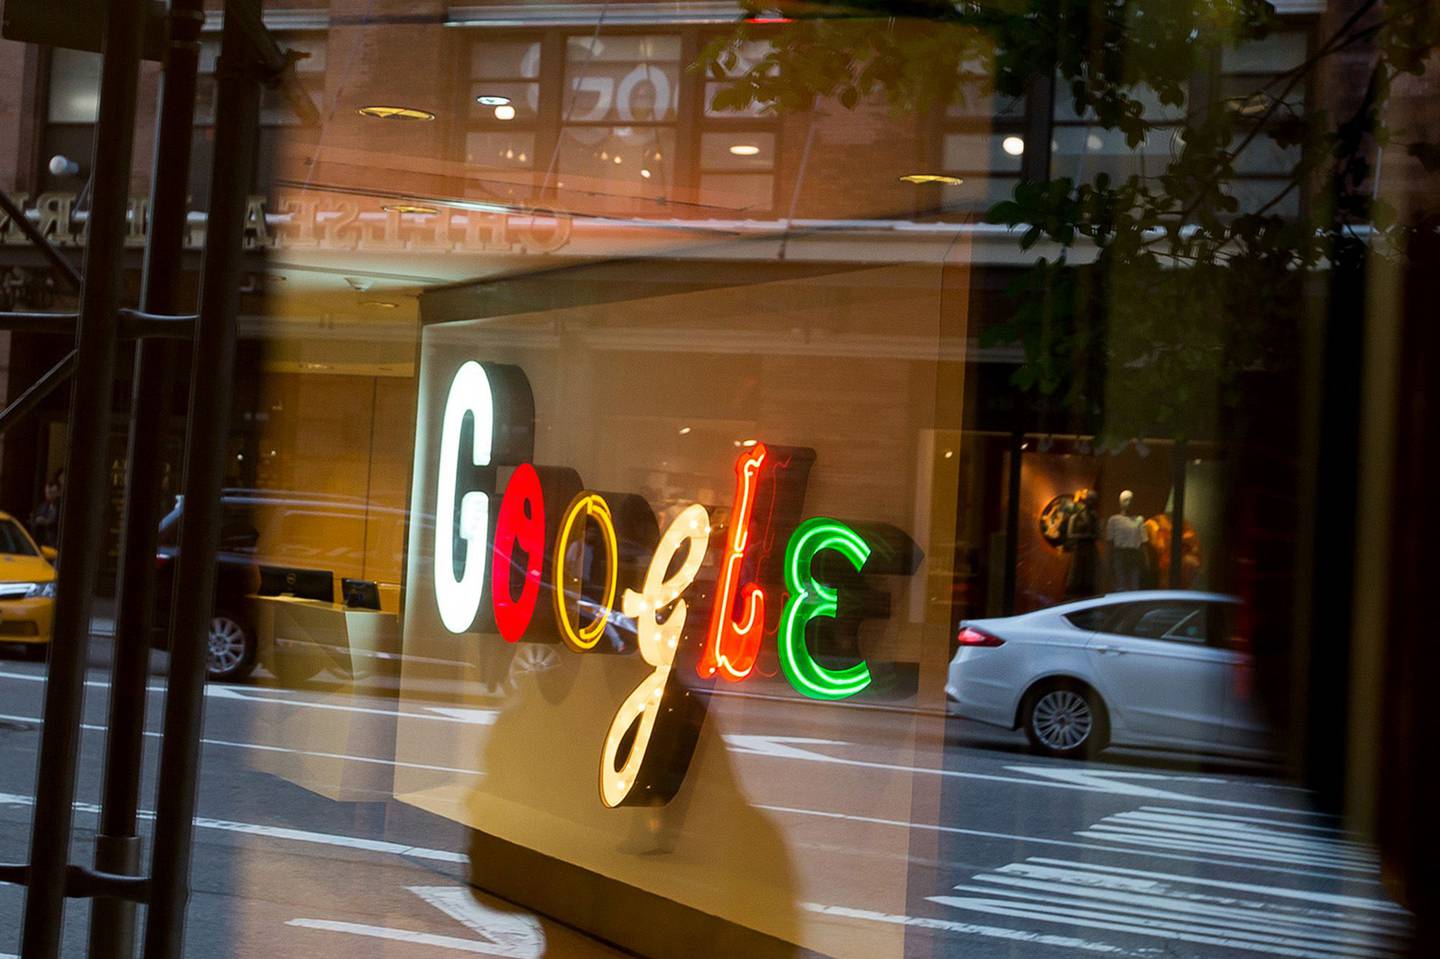 Google rechaza dominar el mercado de la tecnología publicitaria, argumentando que el espacio está lleno de grandes compañías